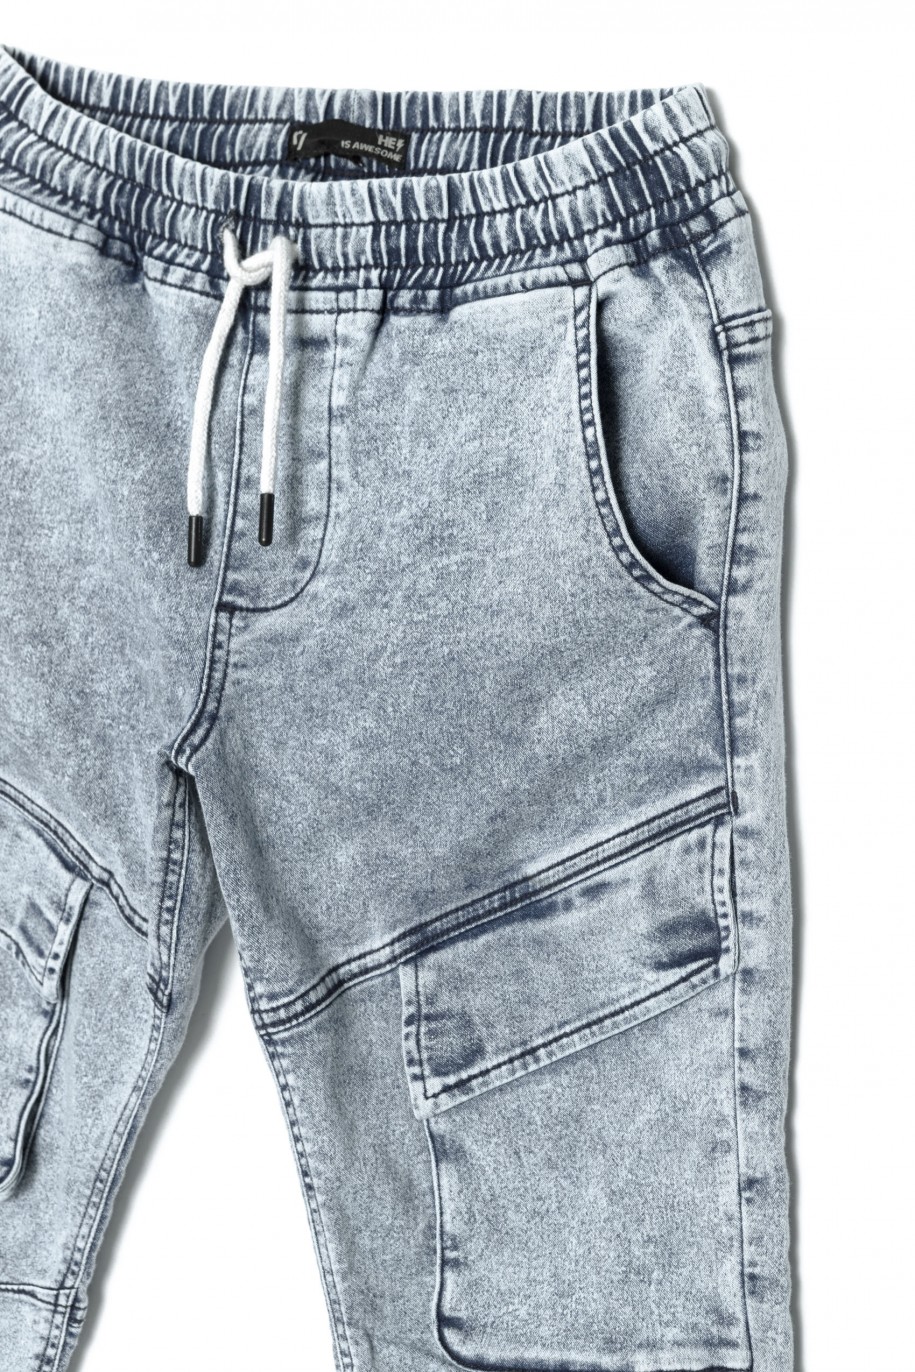 Niebieskie marmurkowe jeansy typu jogger z kieszeniami - 38373